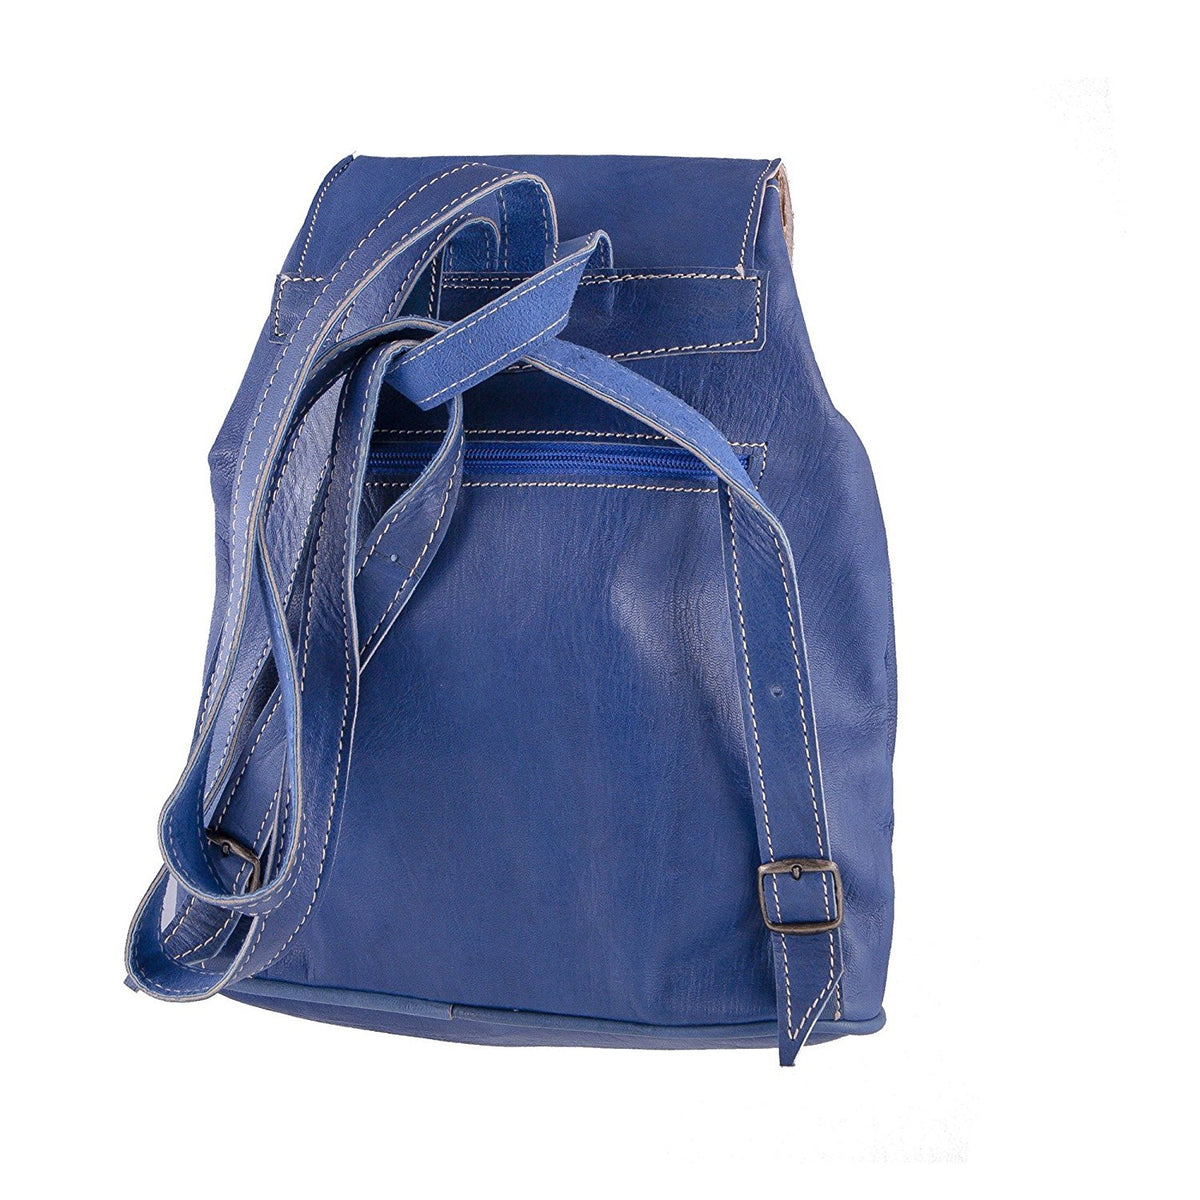 Vintage Style Women's Backpack - Handmade - Brown